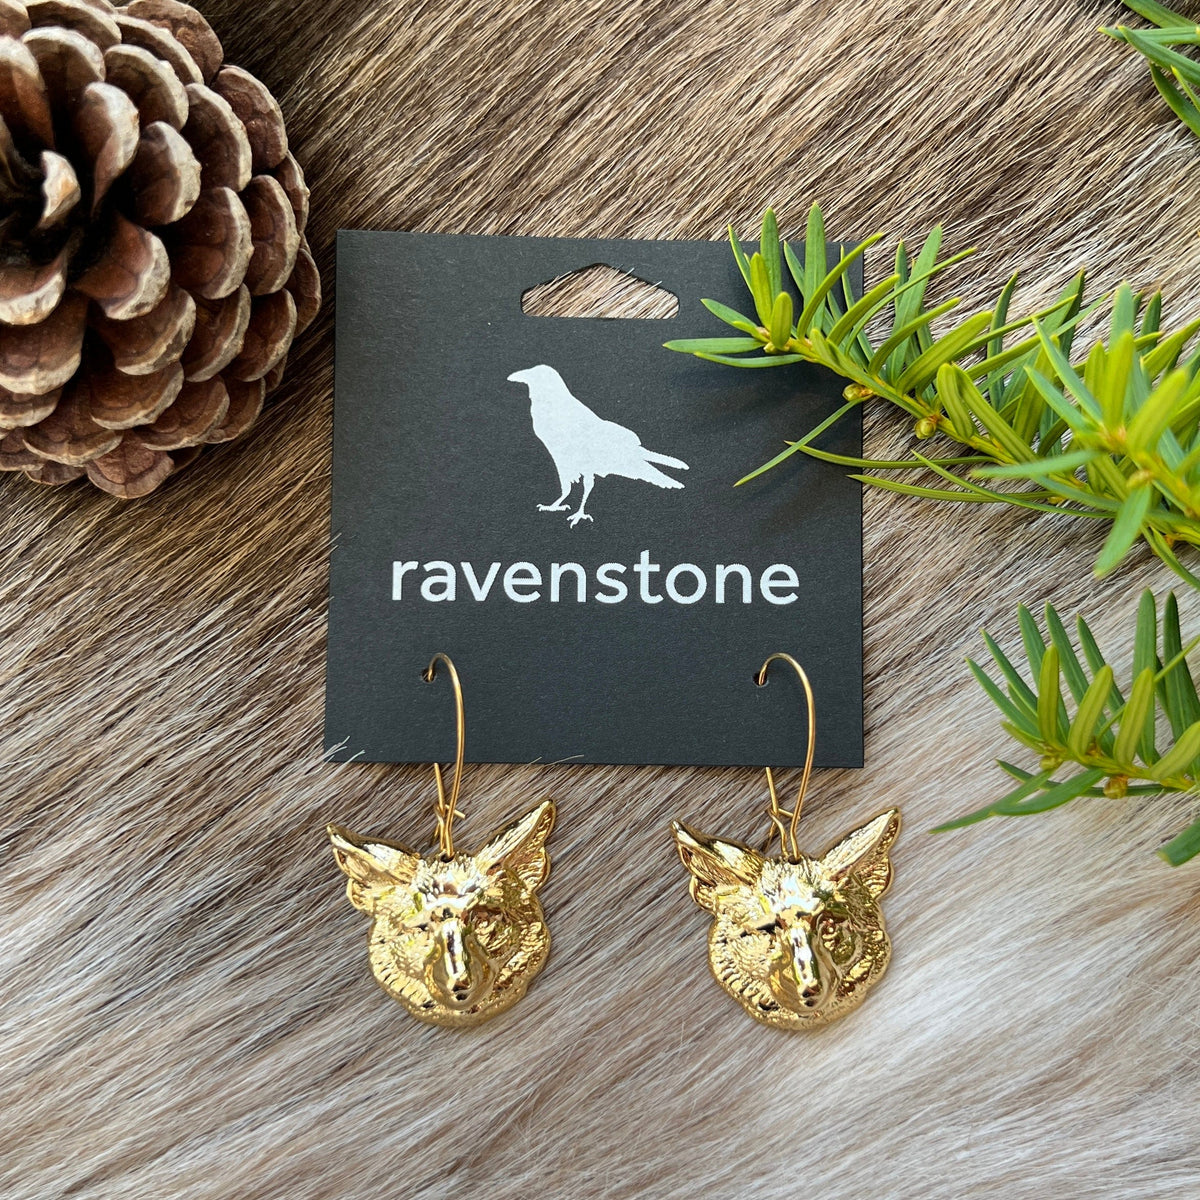 Ravenstone The Golden Fox Earrings